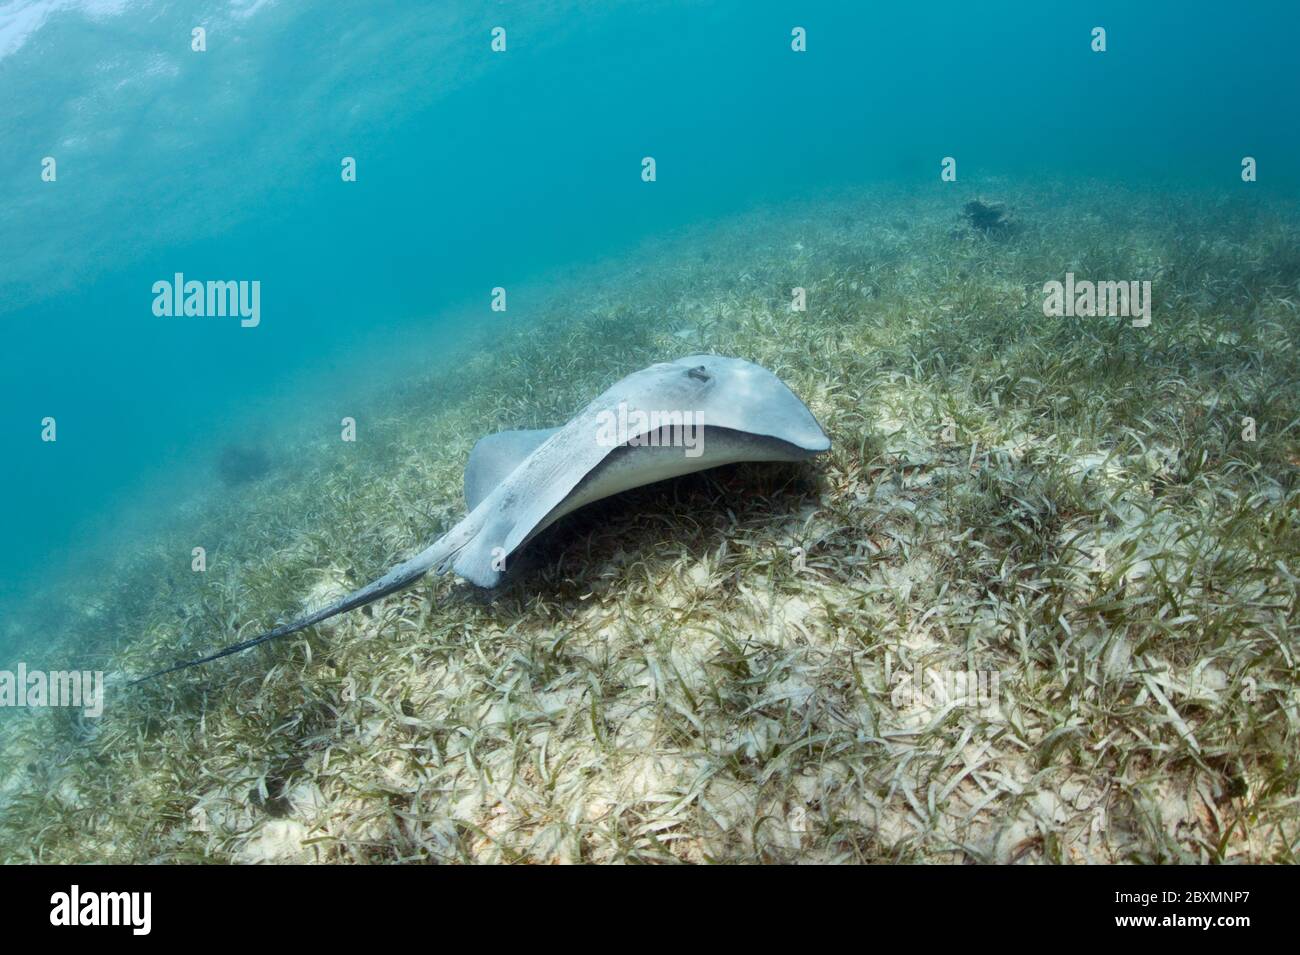 Le staingray de queue de baleine des Caraïbes (Styracula schmardae) nage au-dessus de l'herbe de mer à la barrière de corail du Belize. Banque D'Images